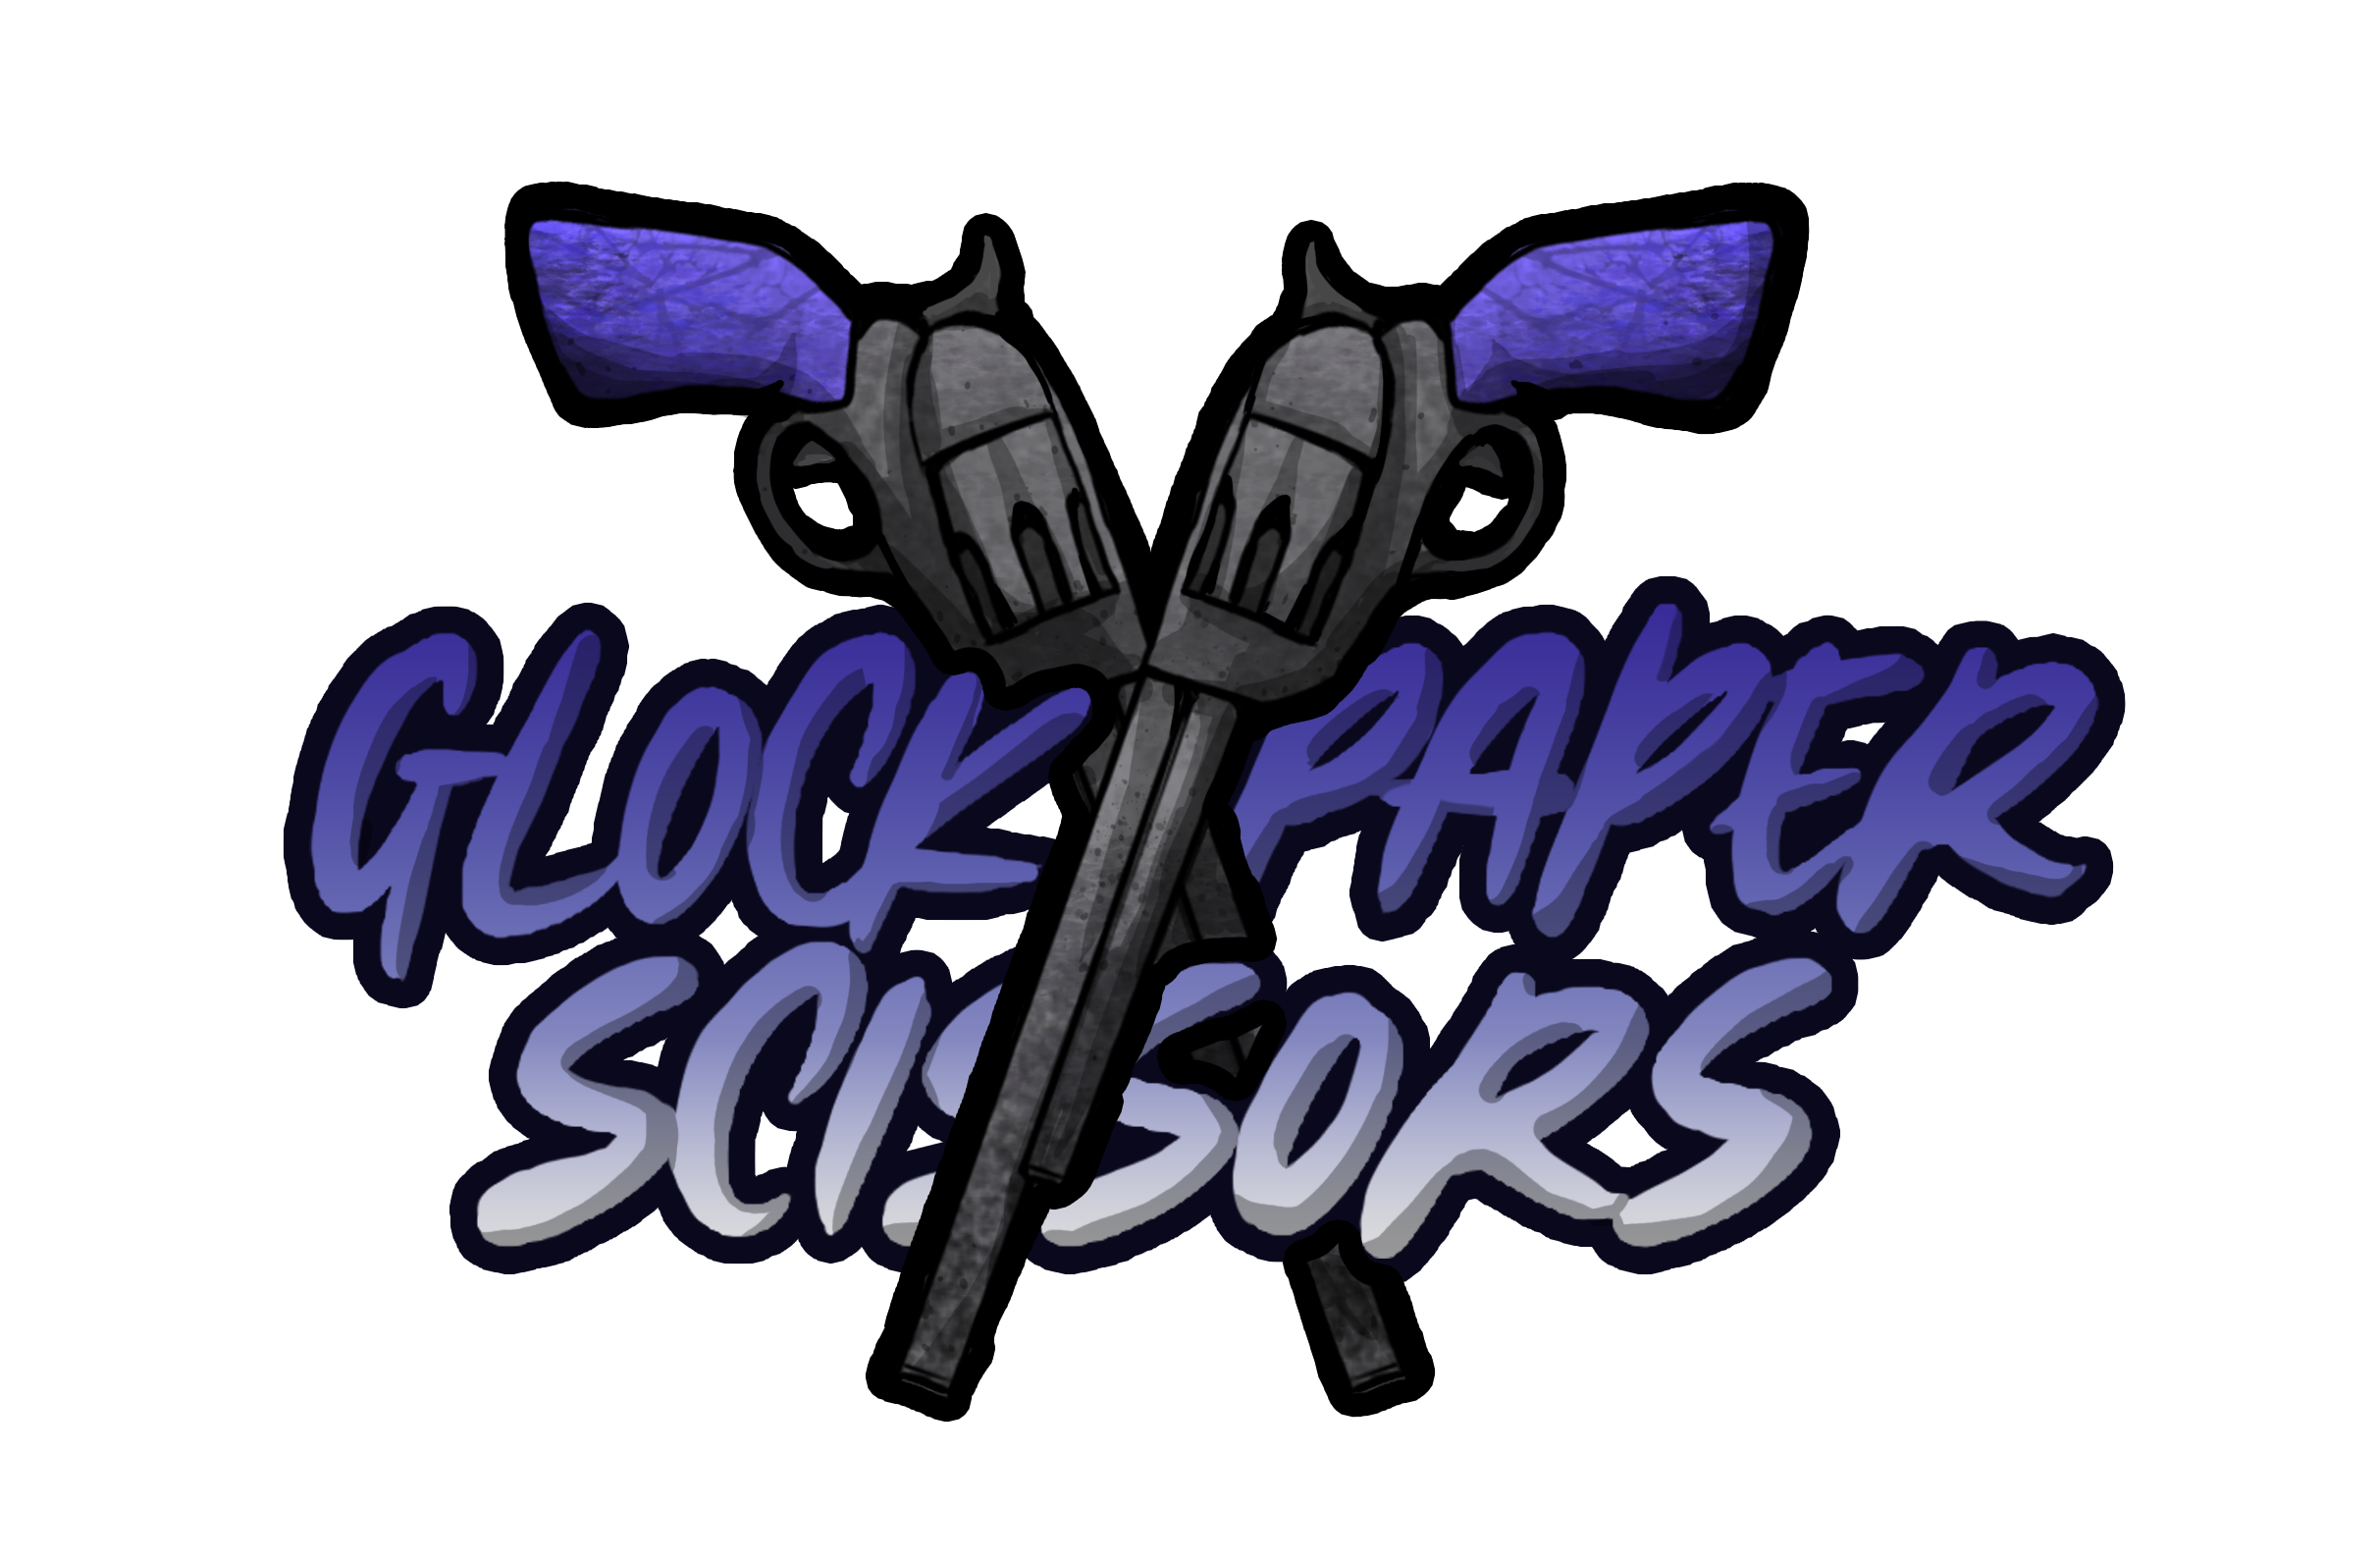 Glock, Paper, Scissors